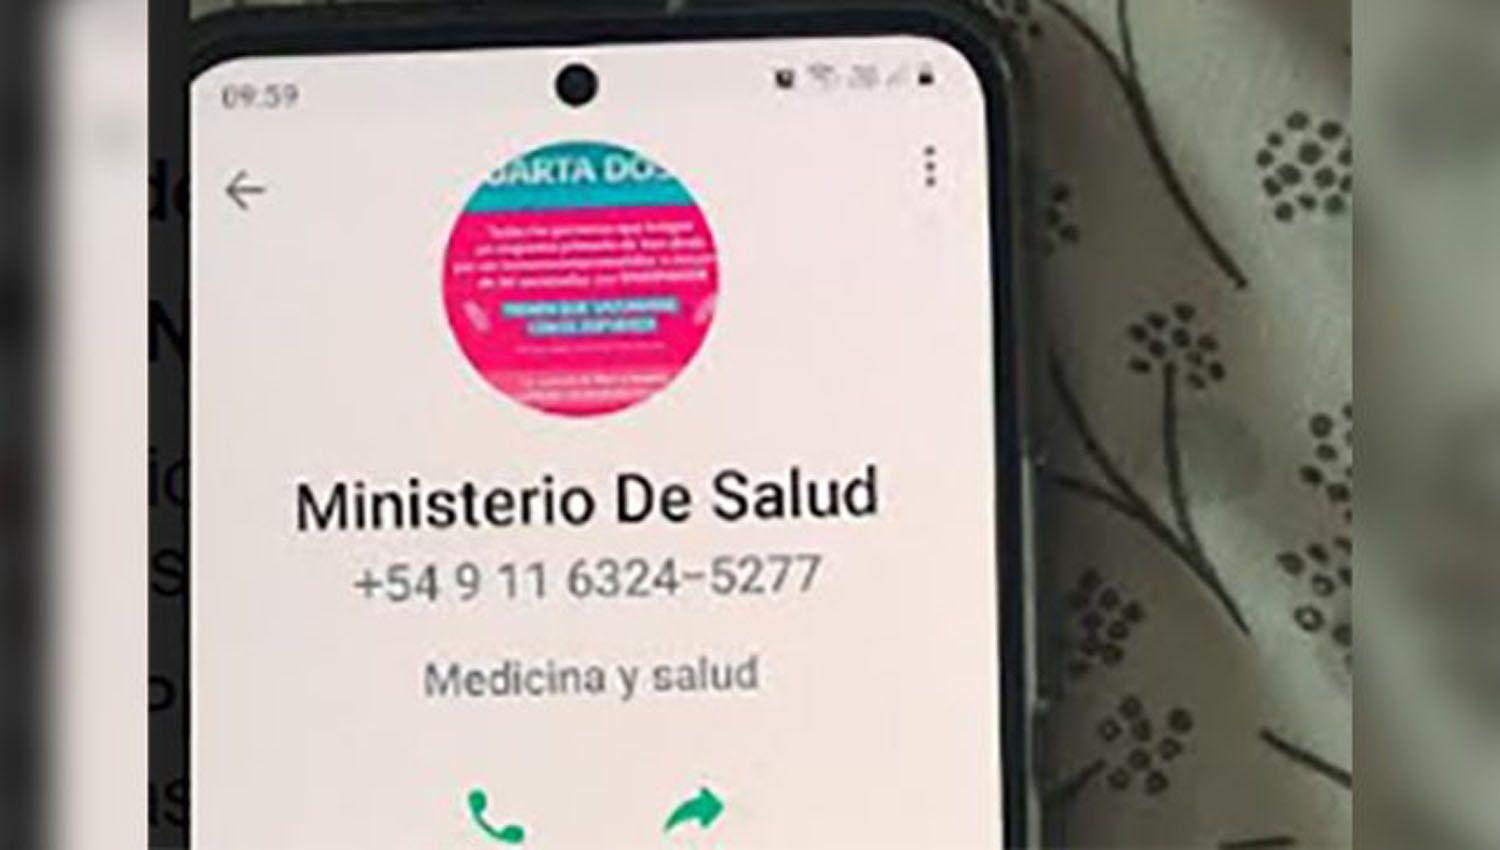 El Ministerio de Salud advierte por estafas que realizan viacutea telefoacutenica